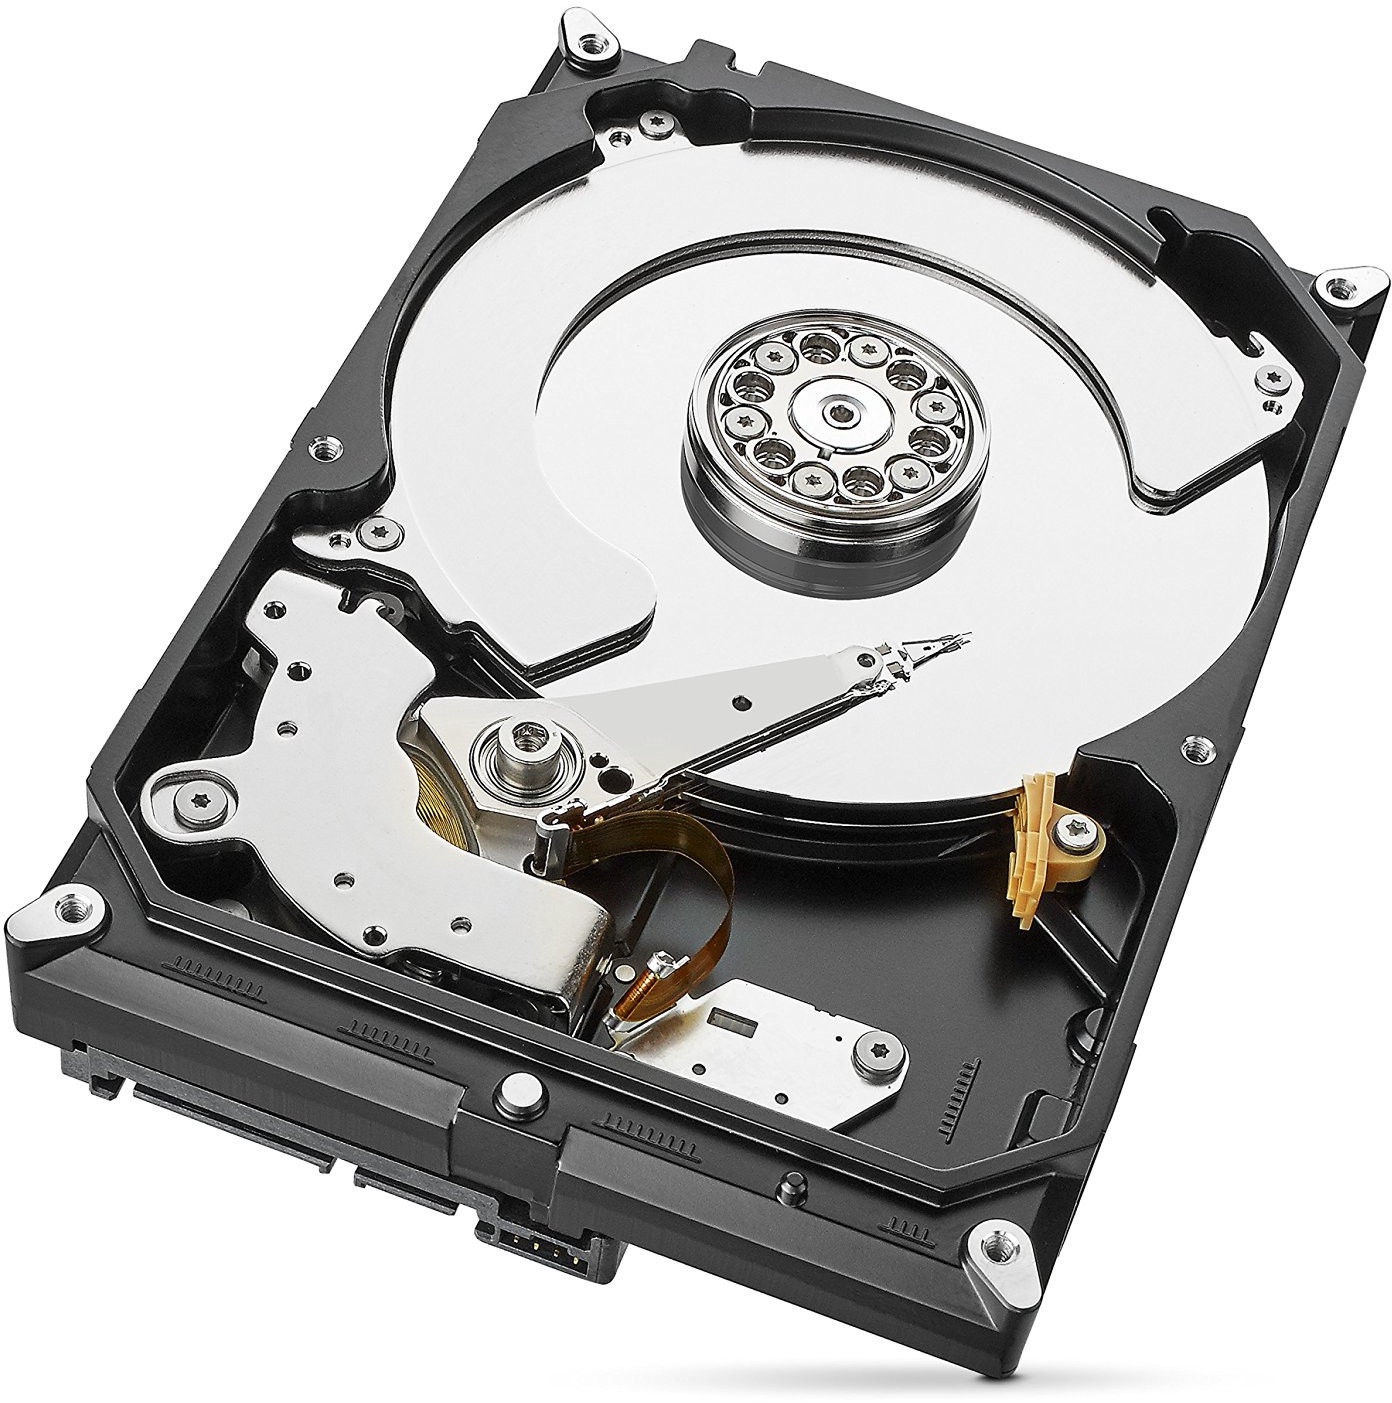 Cietais disks (HDD) Seagate ST4000VX007, HDD, 4 TB -